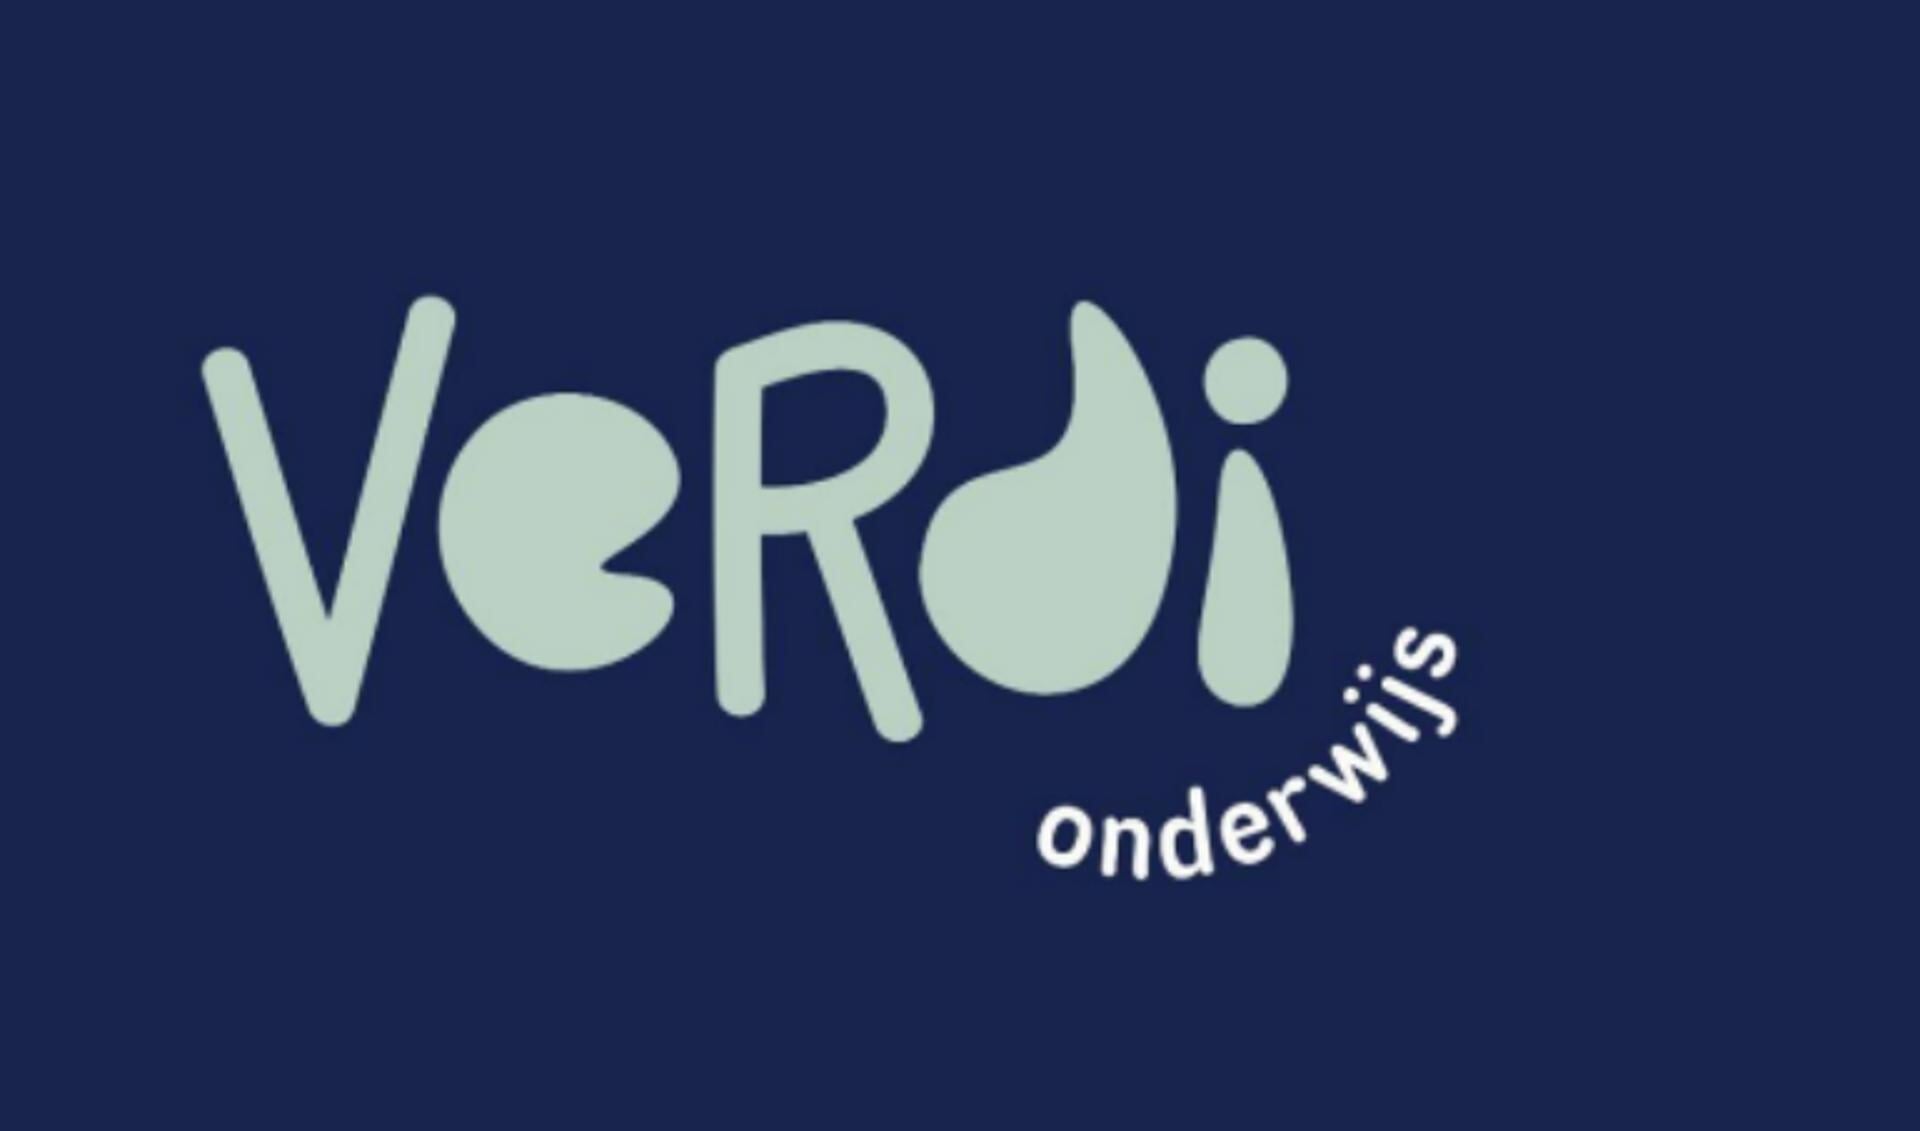 Verdi heeft een nieuw logo gepresenteerd.